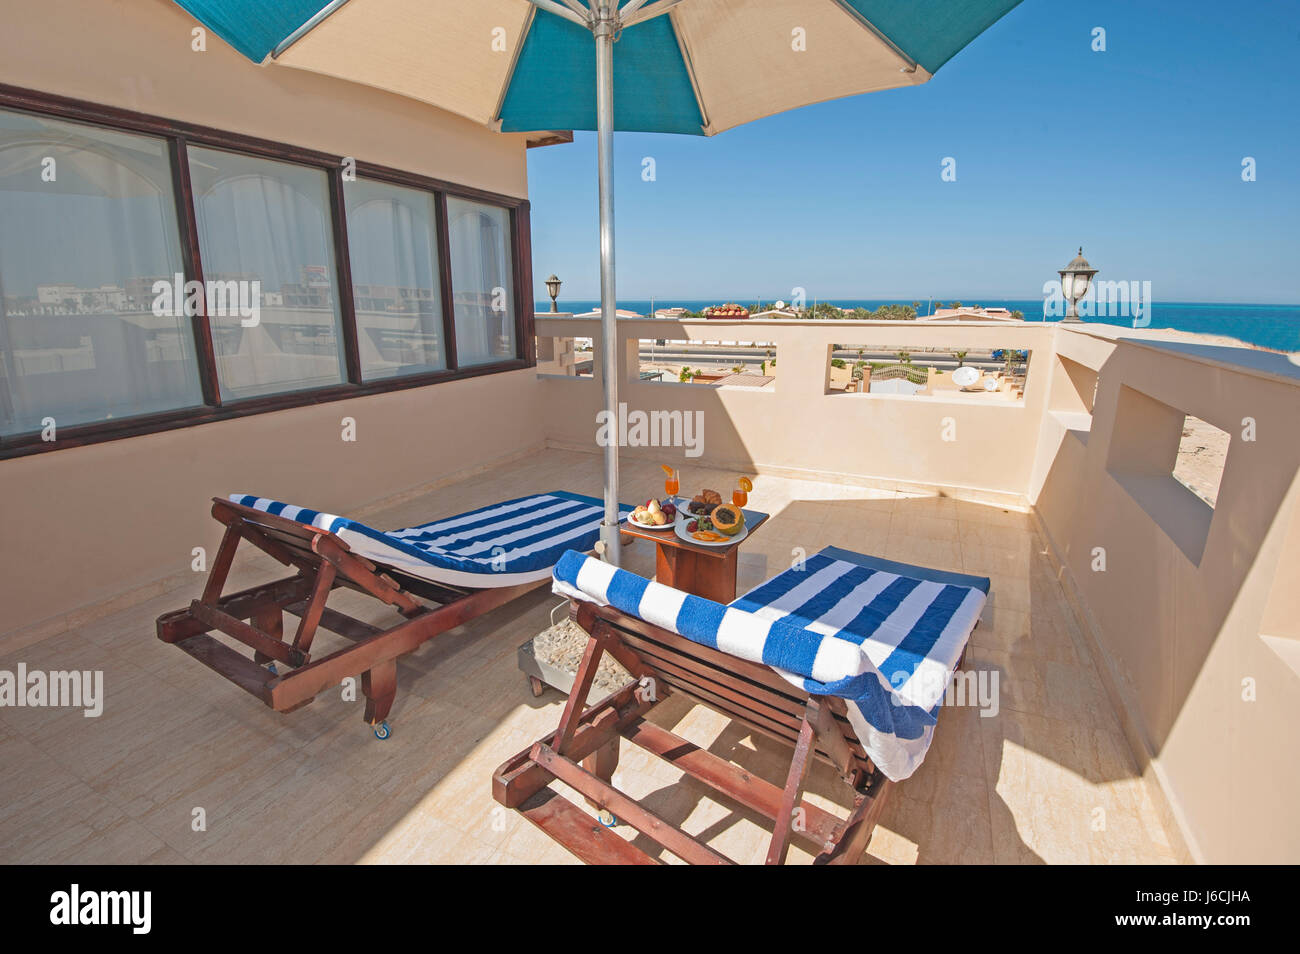 La terrazza sul tetto mobili di una villa di lusso in resort tropicale con lettini per prendere il sole Foto Stock